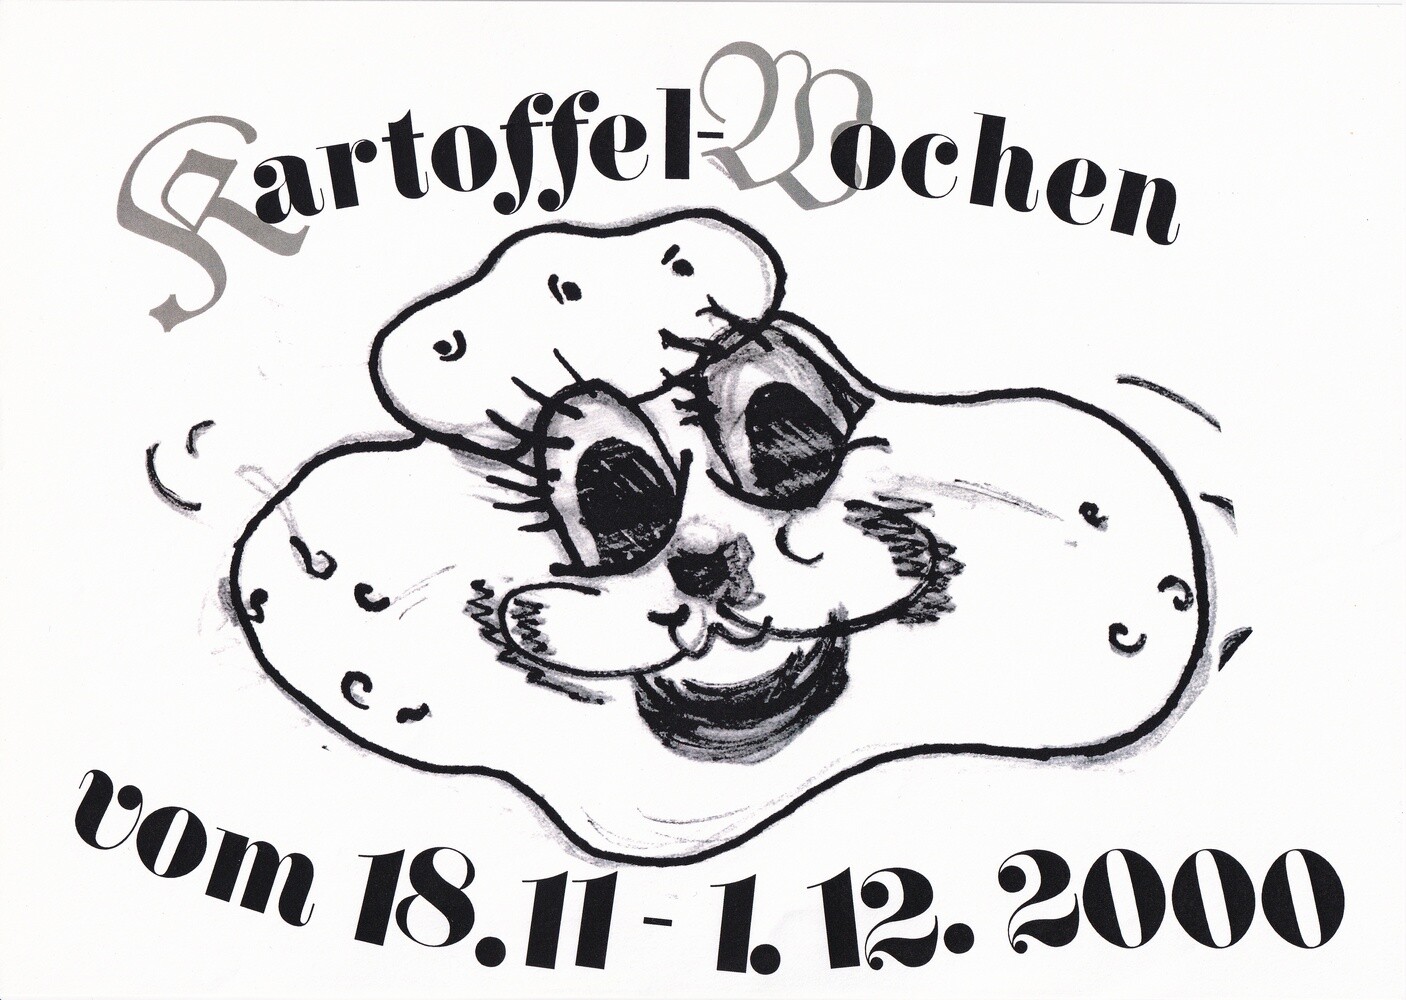 Kartoffel-Wochen vom 18.11. - 1.12.2000 (Kulturverein Guntersblum CC BY-NC-SA)